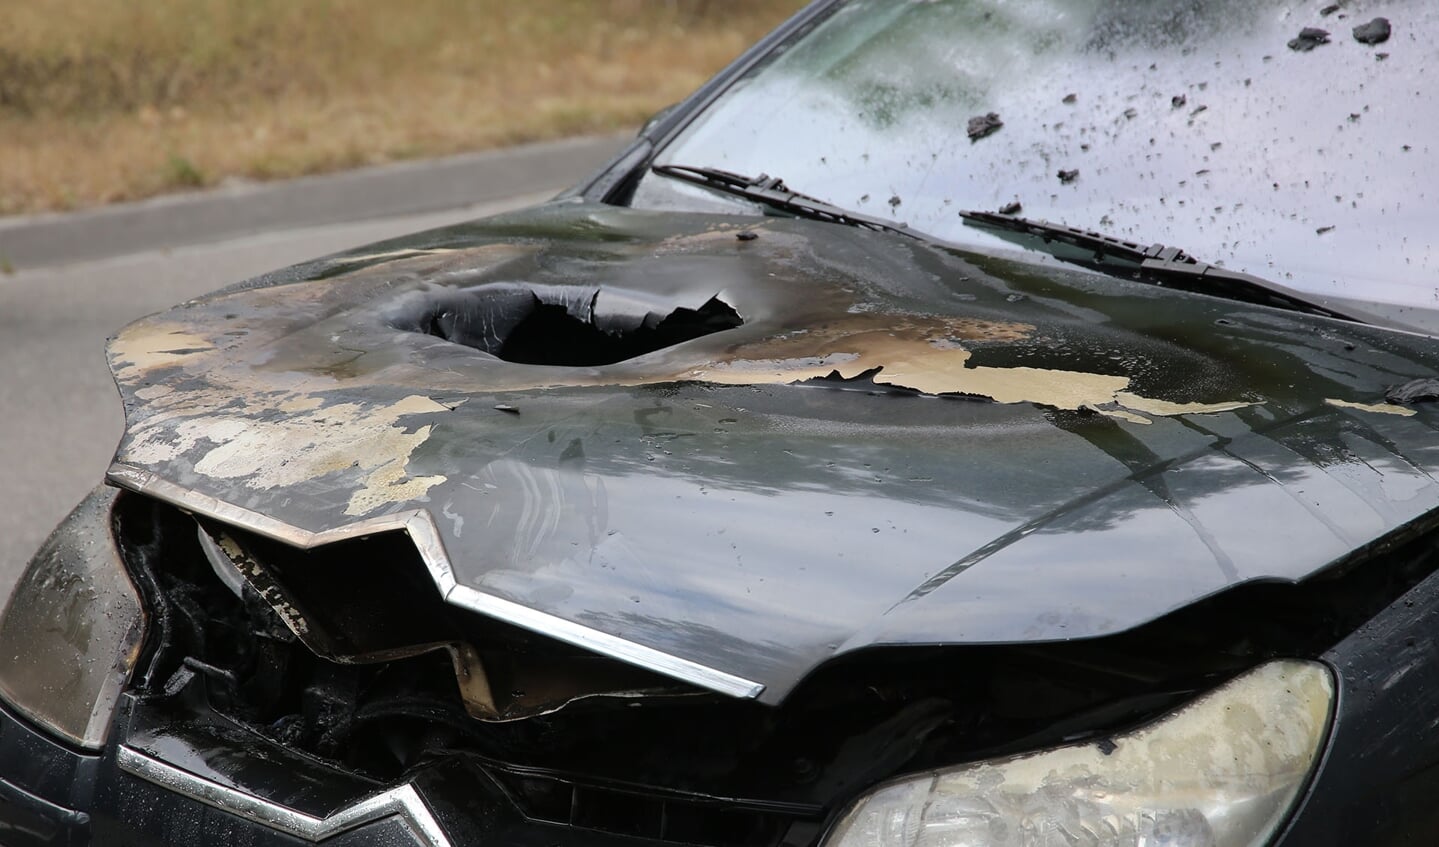 Personenauto loopt flinke schade op door autobrand